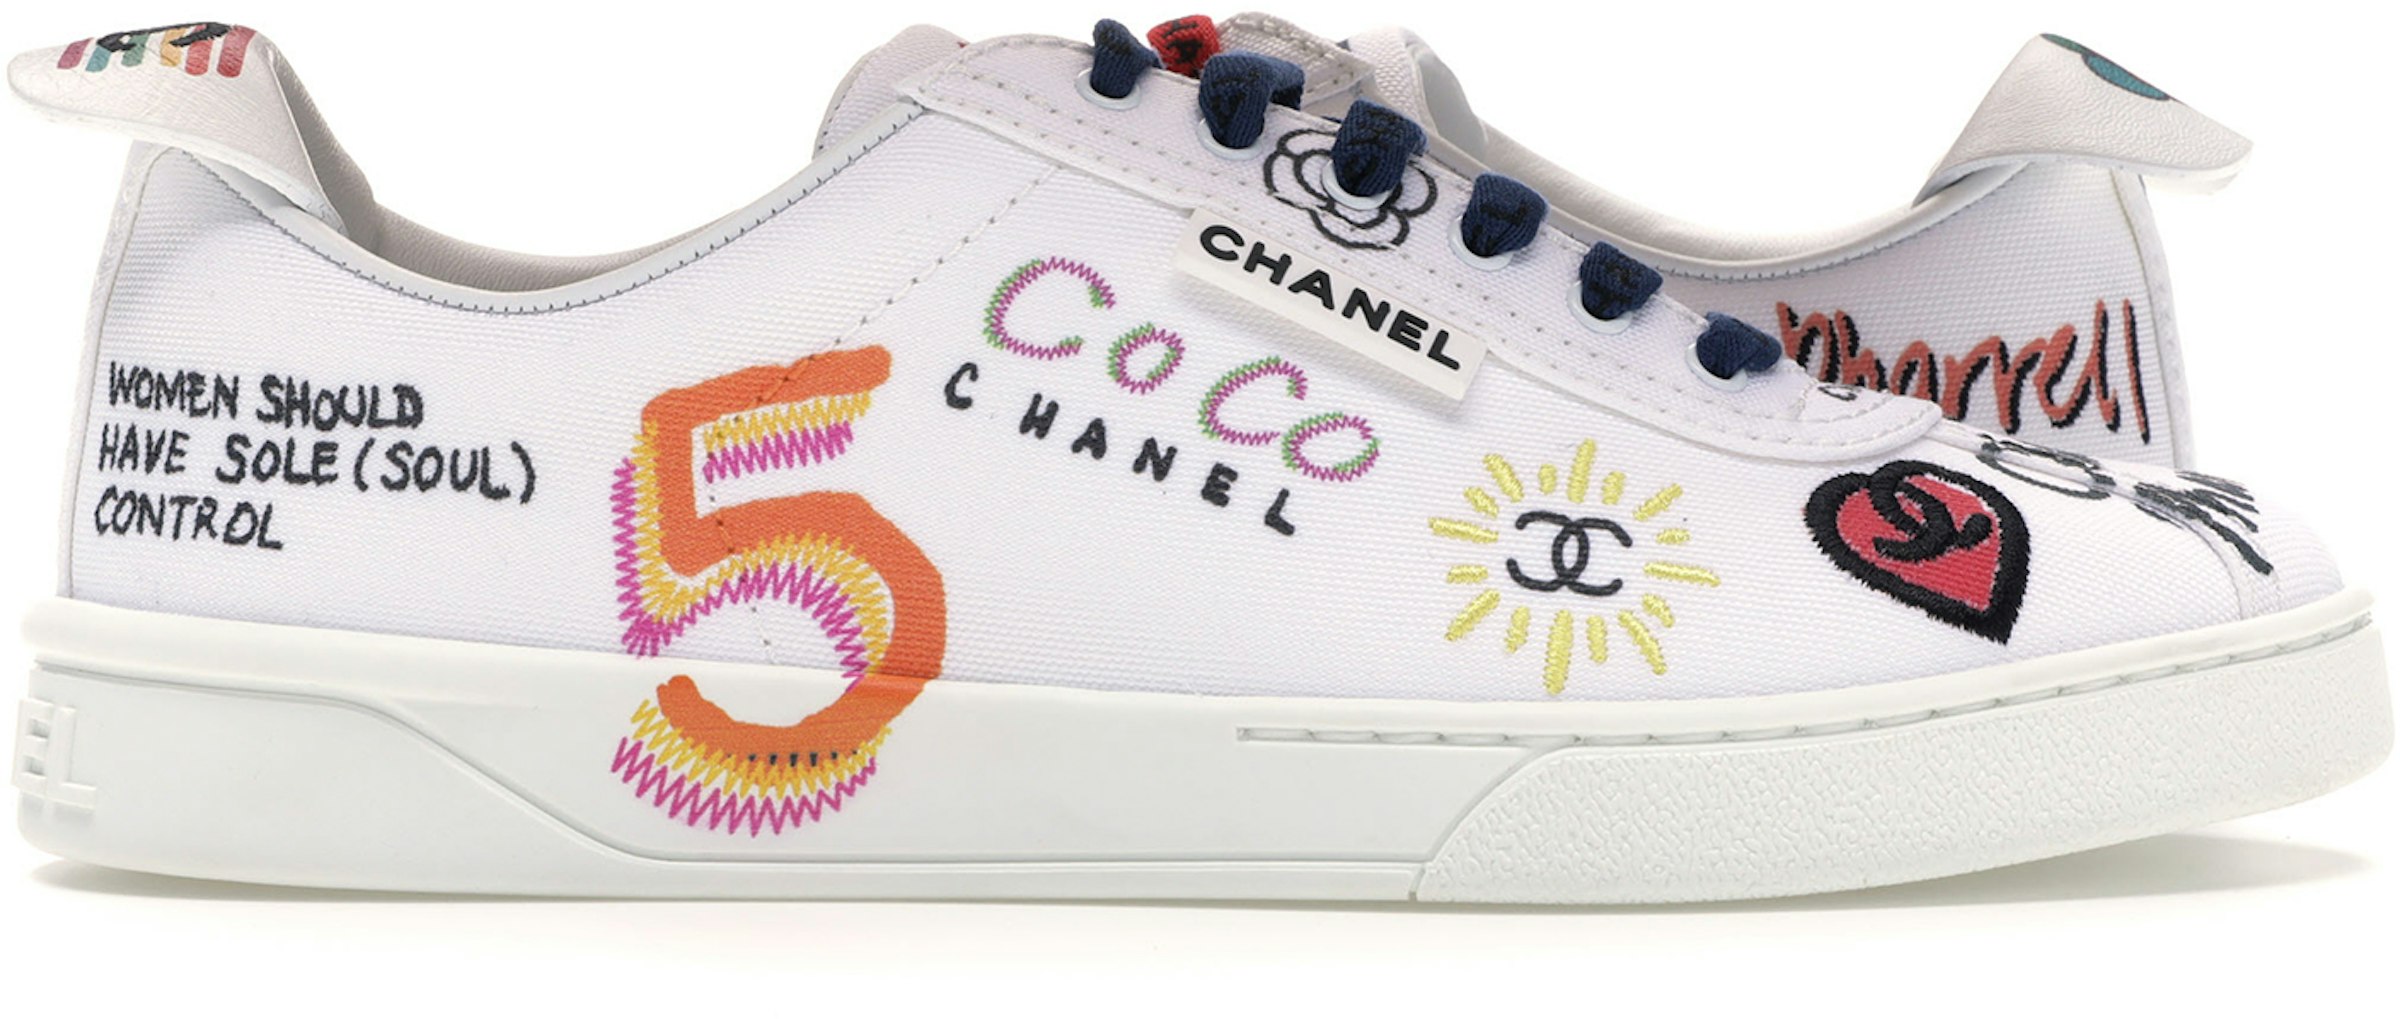 Chanel Multi-Color (Women's) - 19D G34877X53027 C2340 - US